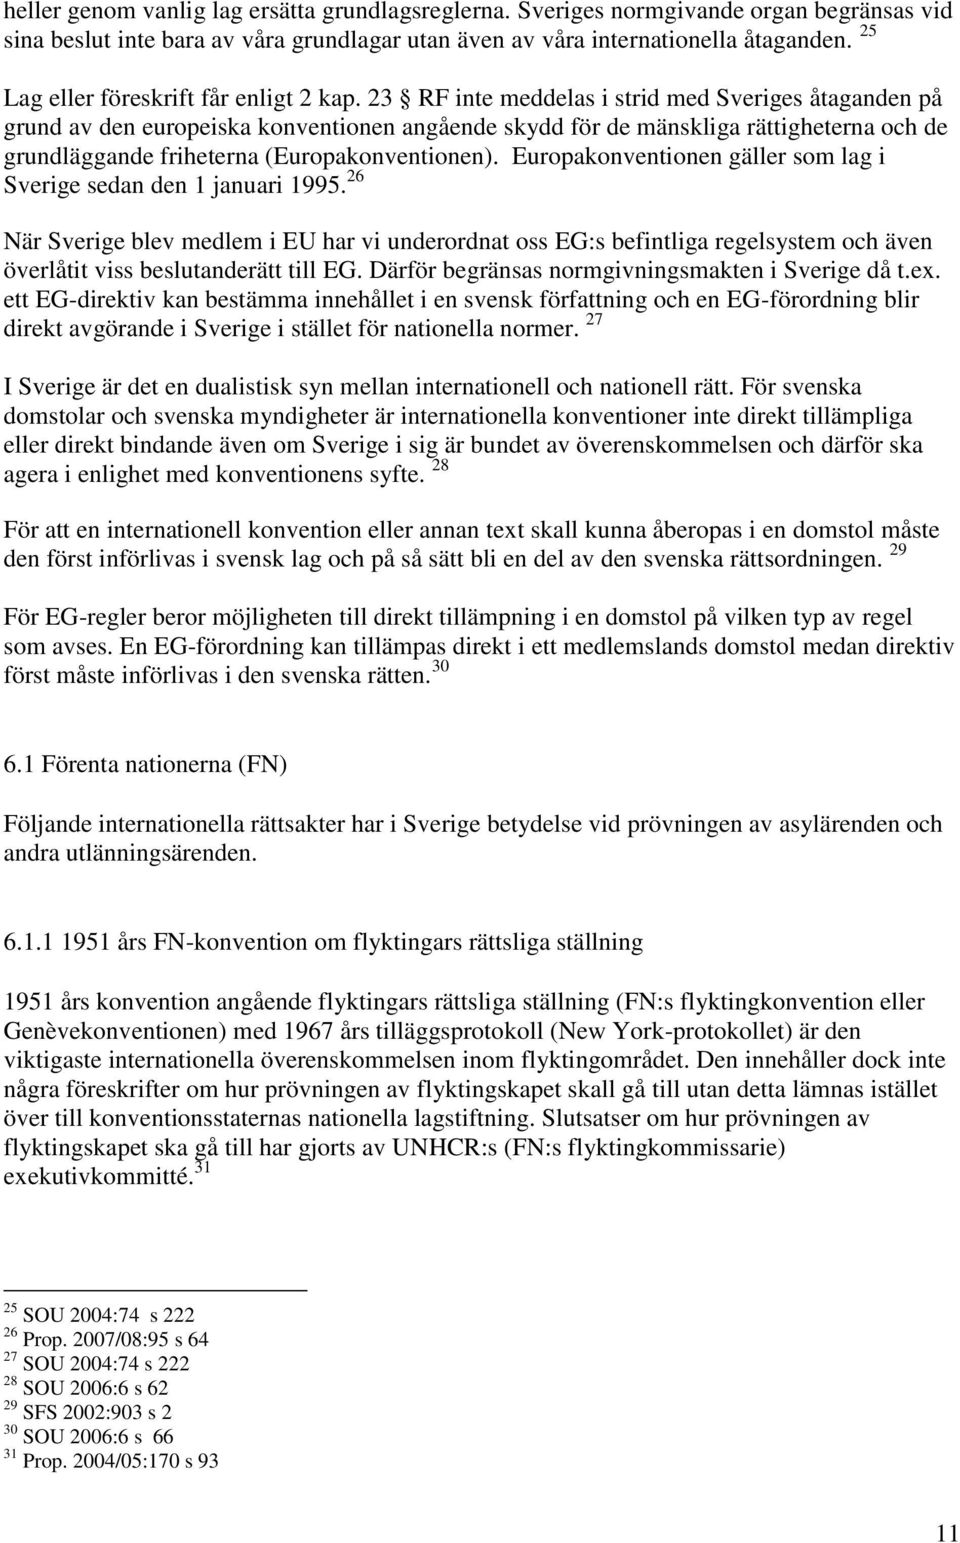 23 RF inte meddelas i strid med Sveriges åtaganden på grund av den europeiska konventionen angående skydd för de mänskliga rättigheterna och de grundläggande friheterna (Europakonventionen).